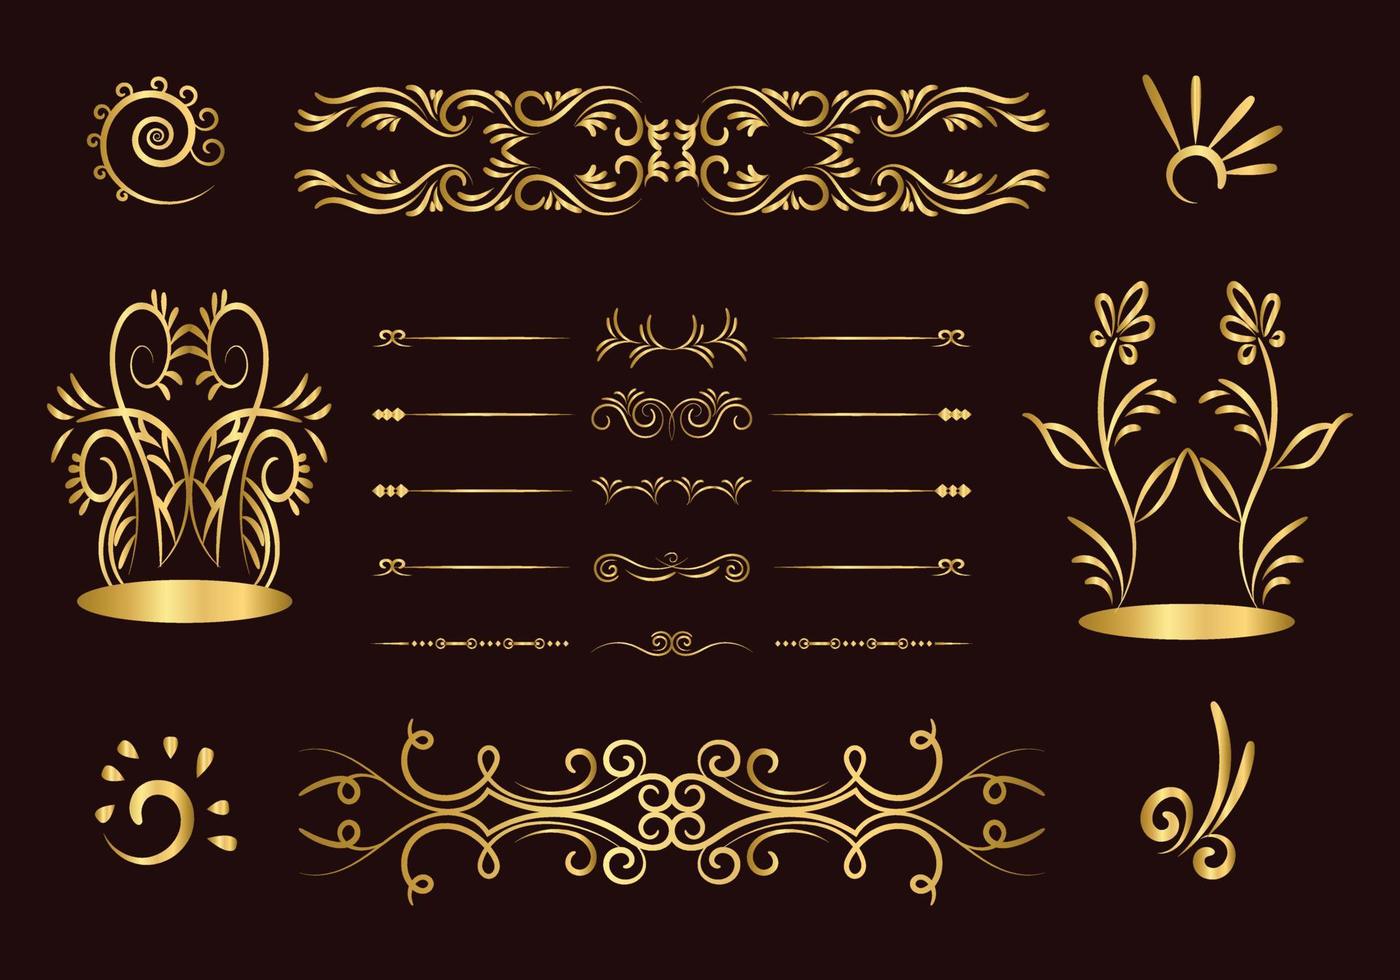 conjunto de divisores de ouro. elementos decorativos ornamentais. vector design de elementos ornamentados. o ouro floresce. divisor caligráfico decorativo e borda para ornamento de scrapbook de vinheta.